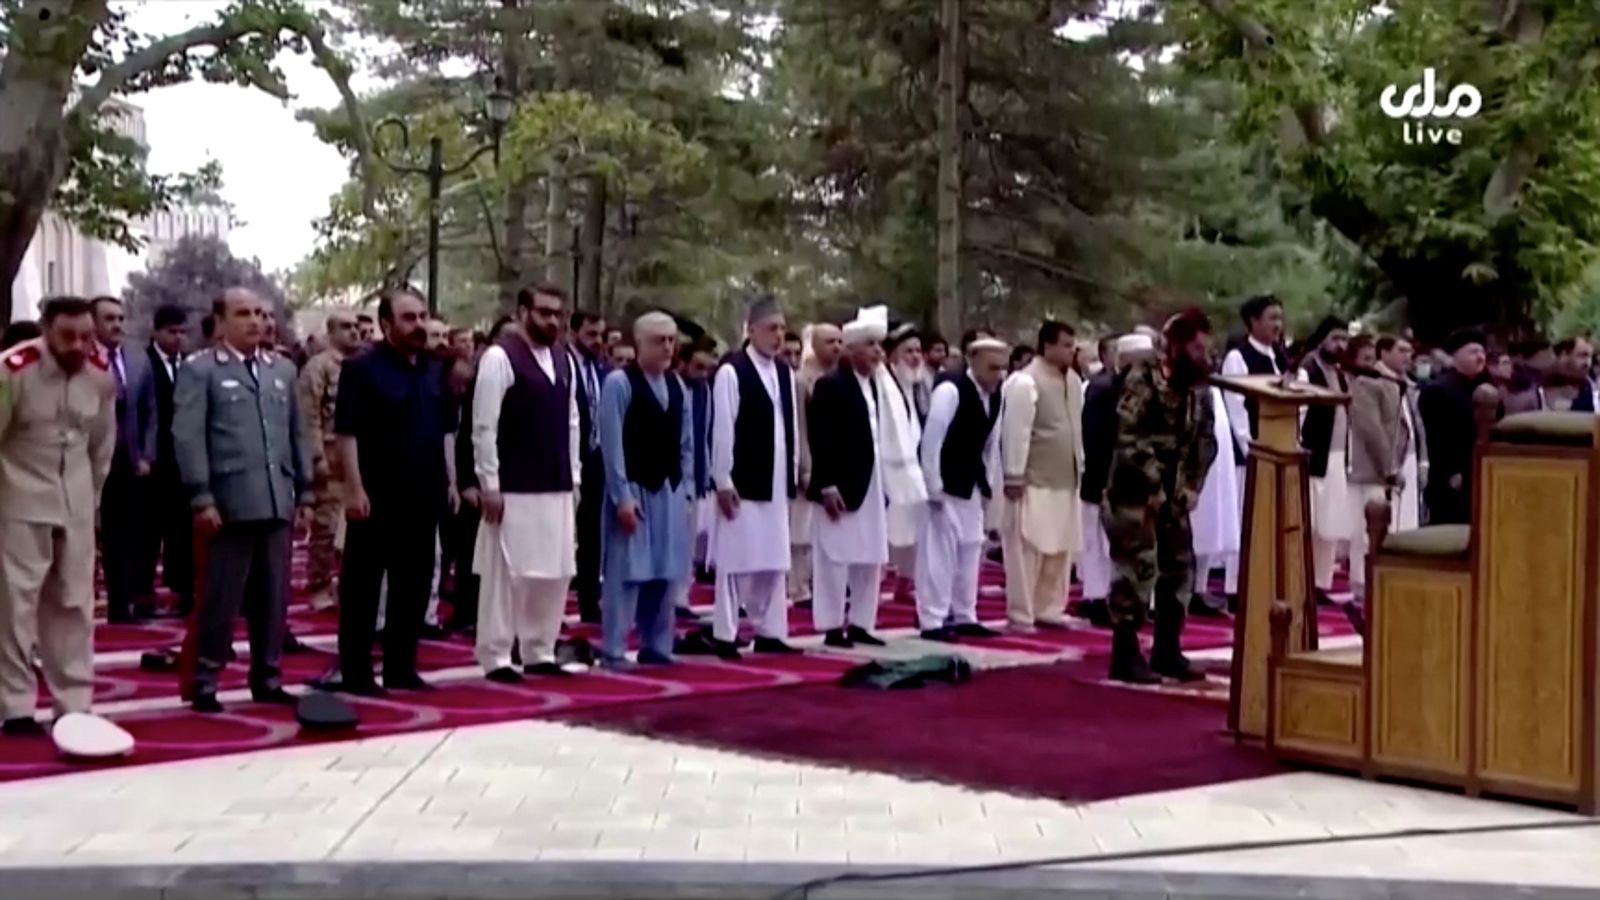 الرئيس الأفغاني أشرف غني (الصف الأمامي) يحضر صلاة عيد الأضحى في القصر الرئاسي قبل لحظات من سماع أصوات انفجارات الصواريخ في العاصمة الأفغانية كابول يوم 20 يوليو 2021 في هذه الصورة الثابتة المأخوذة من لقطات تلفزيونية - REUTERS